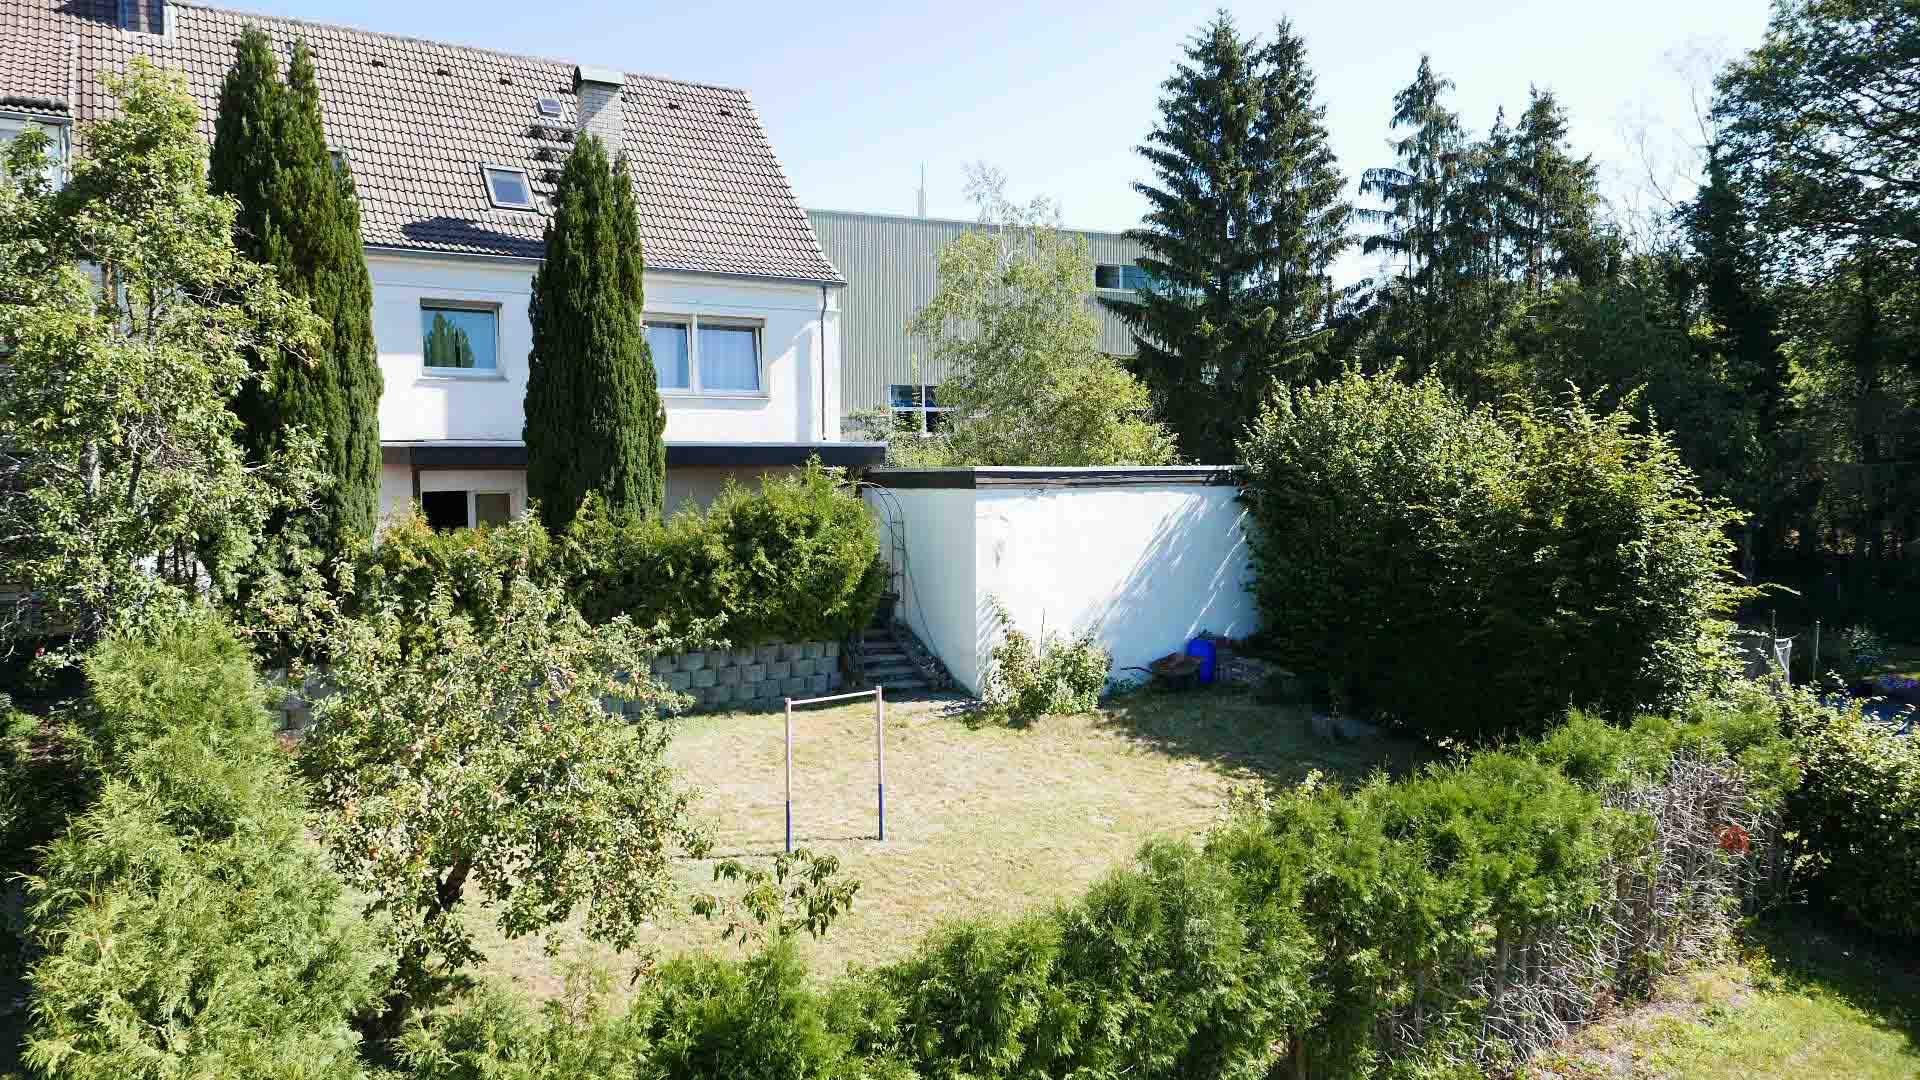 173 2-219 - Morsbach-Lichtenberg: Doppelhaushälfte mit über 200 m² Wohnfläche